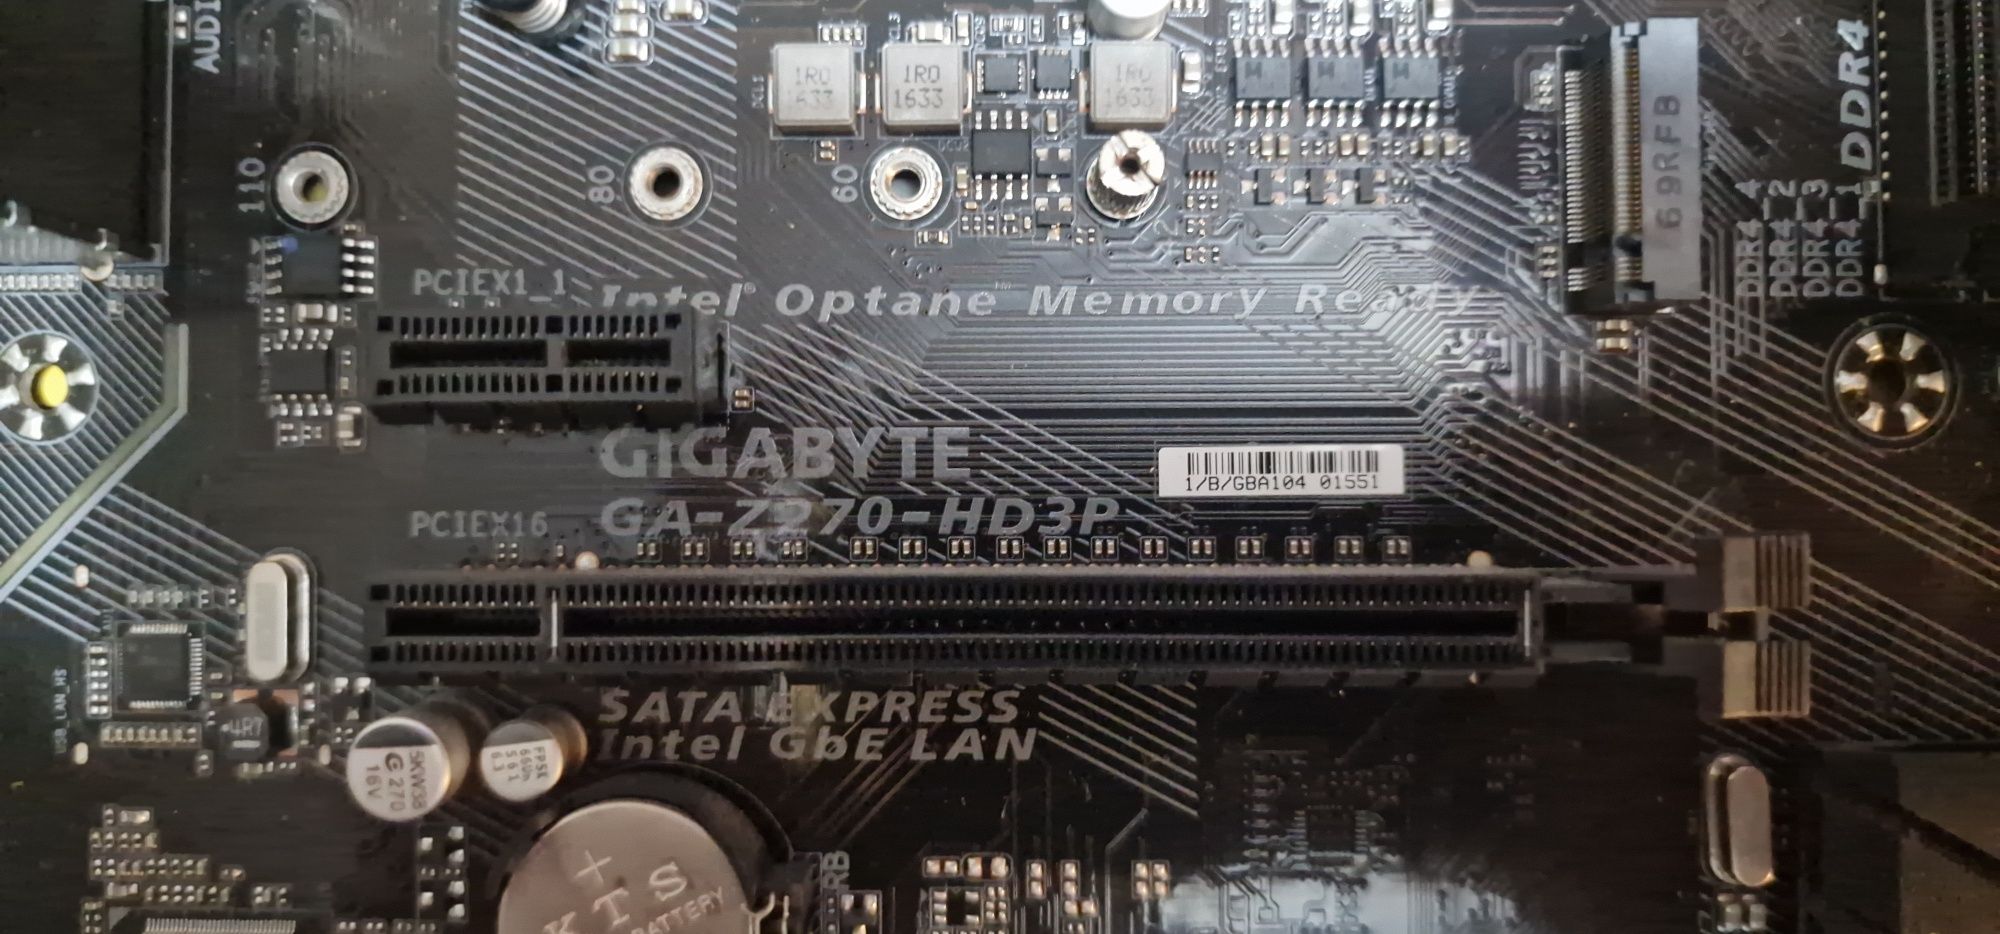 Płyta główna  ATX Gigabyte  GA-Z270-HD3P